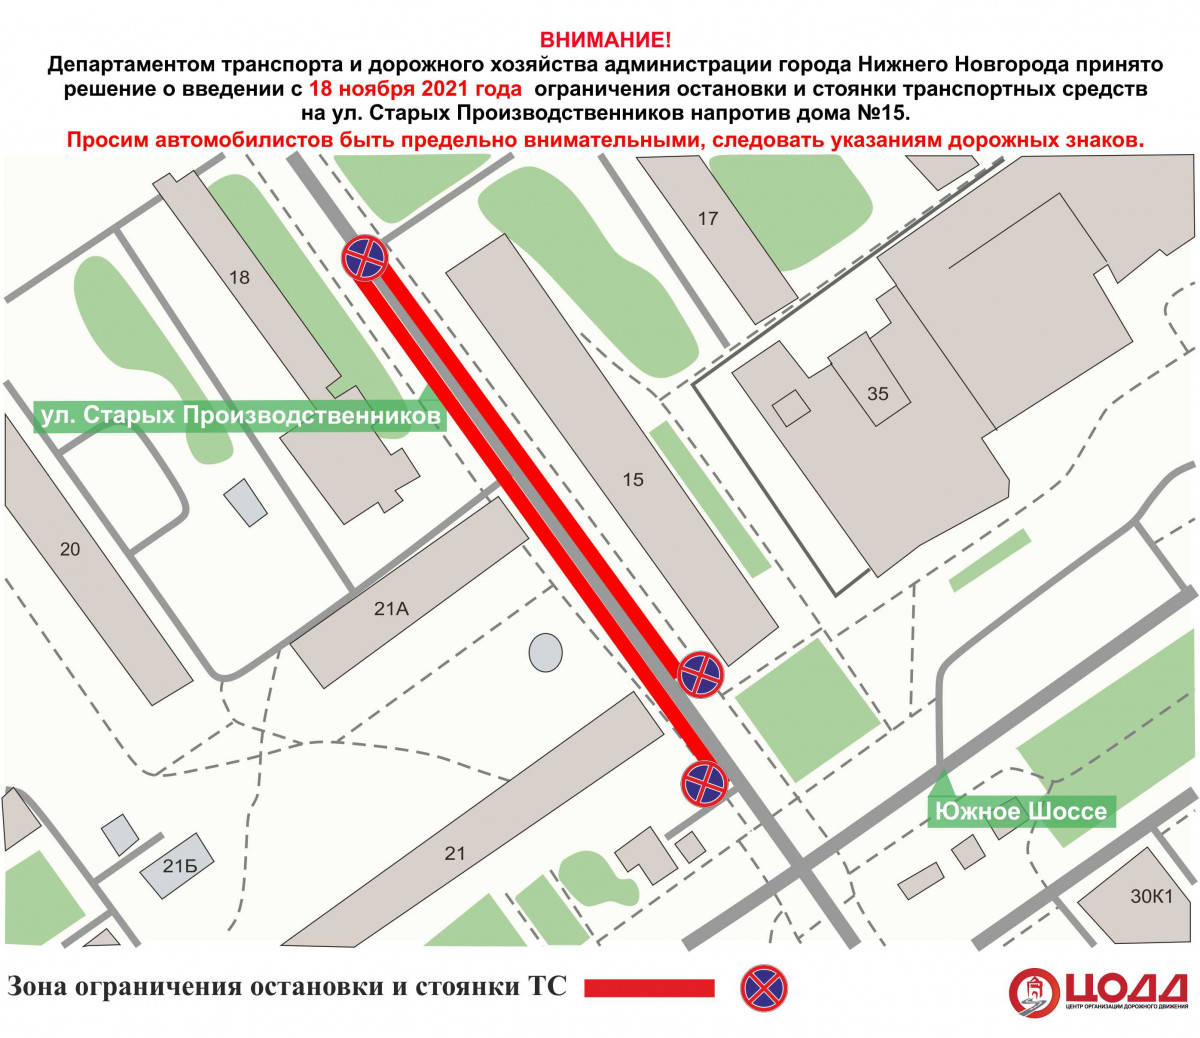 Парковку запретят на улице Старых Производственников с 18 ноября